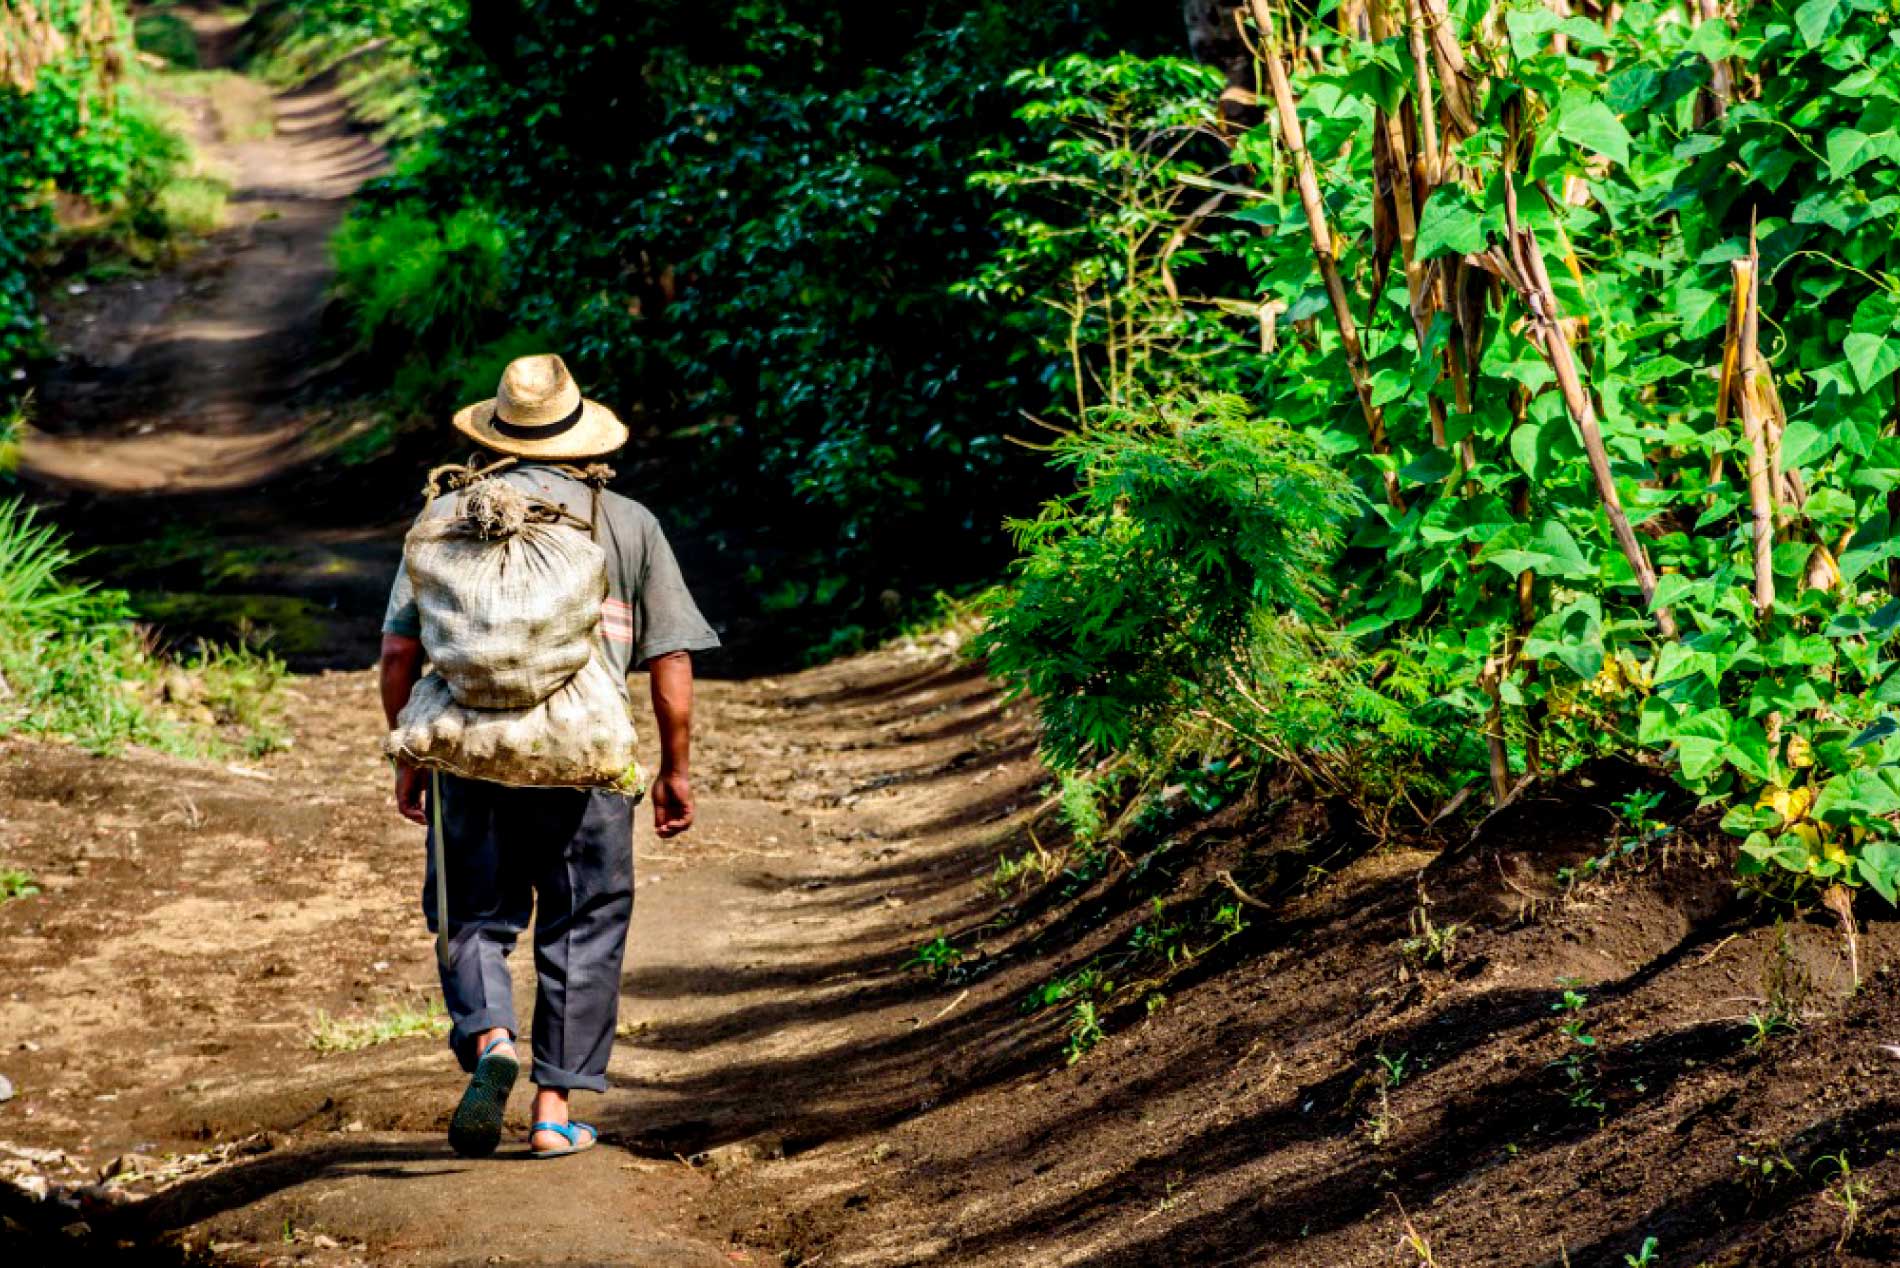 Campesino caminando por un camino rural.